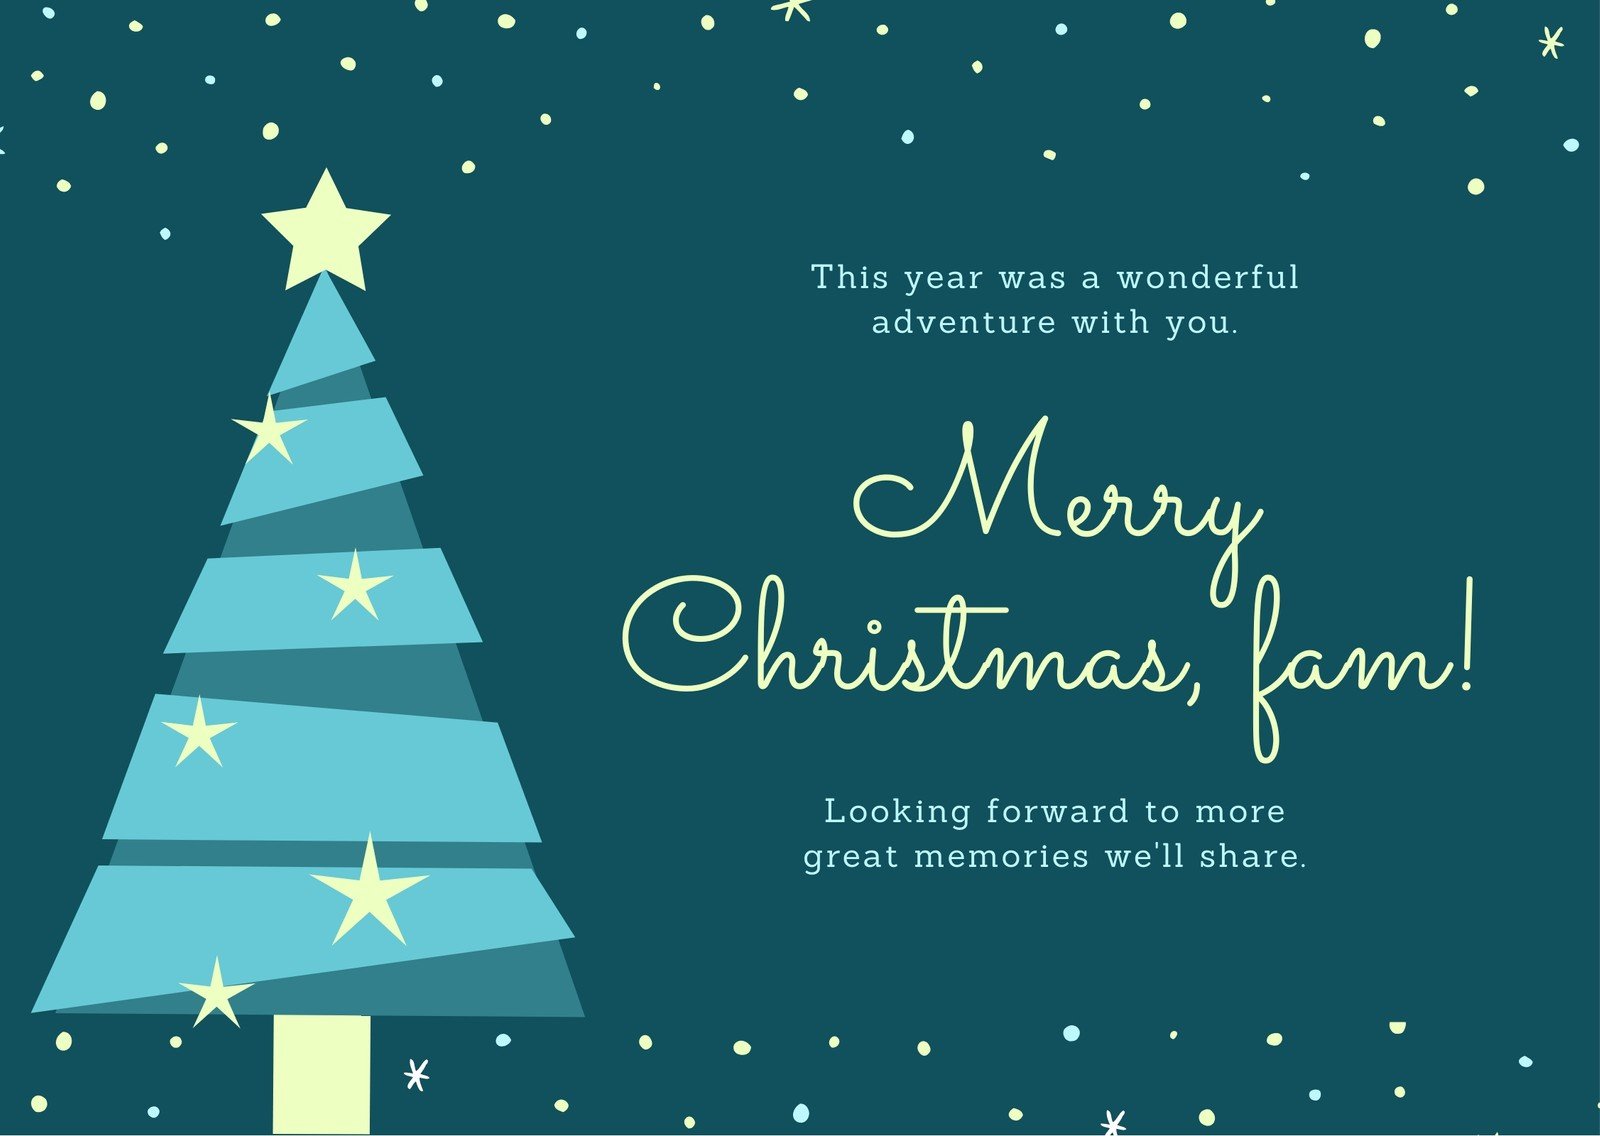 Free custom printable Christmas thank you card templates  Canva In Christmas Thank You Card Templates Free